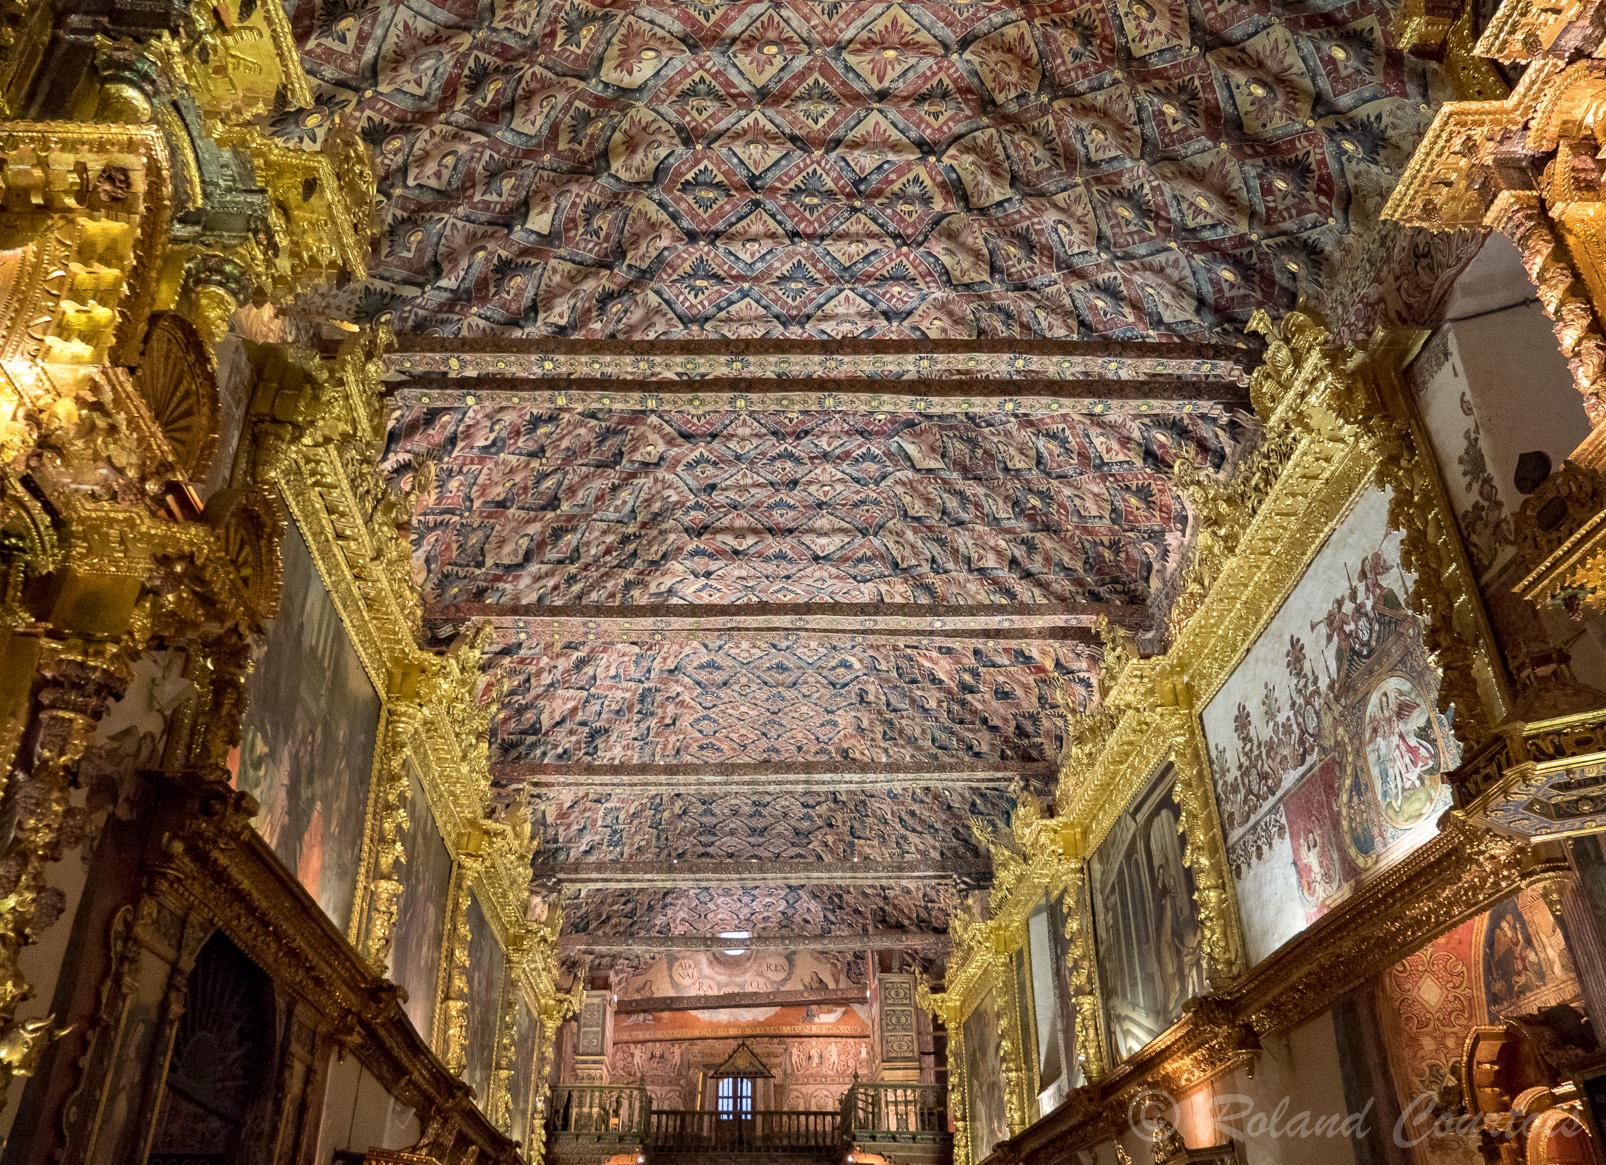 Le plafond est presque entièrement recouvert d'une décoration de style mudéjar et de motifs floraux.